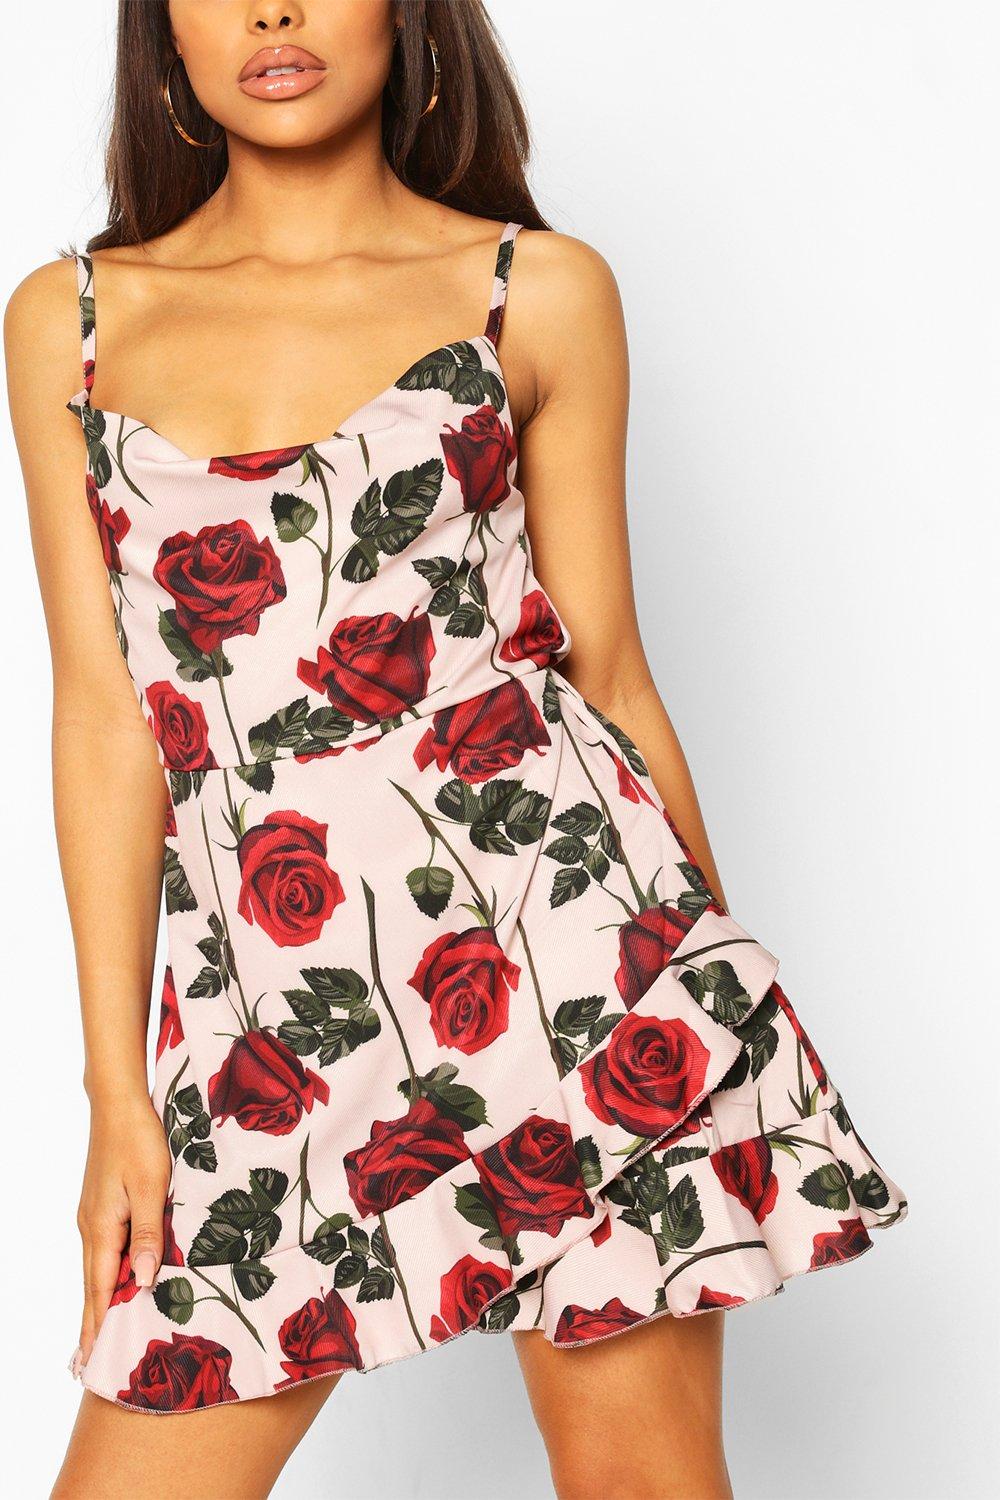 boohoo rose dress